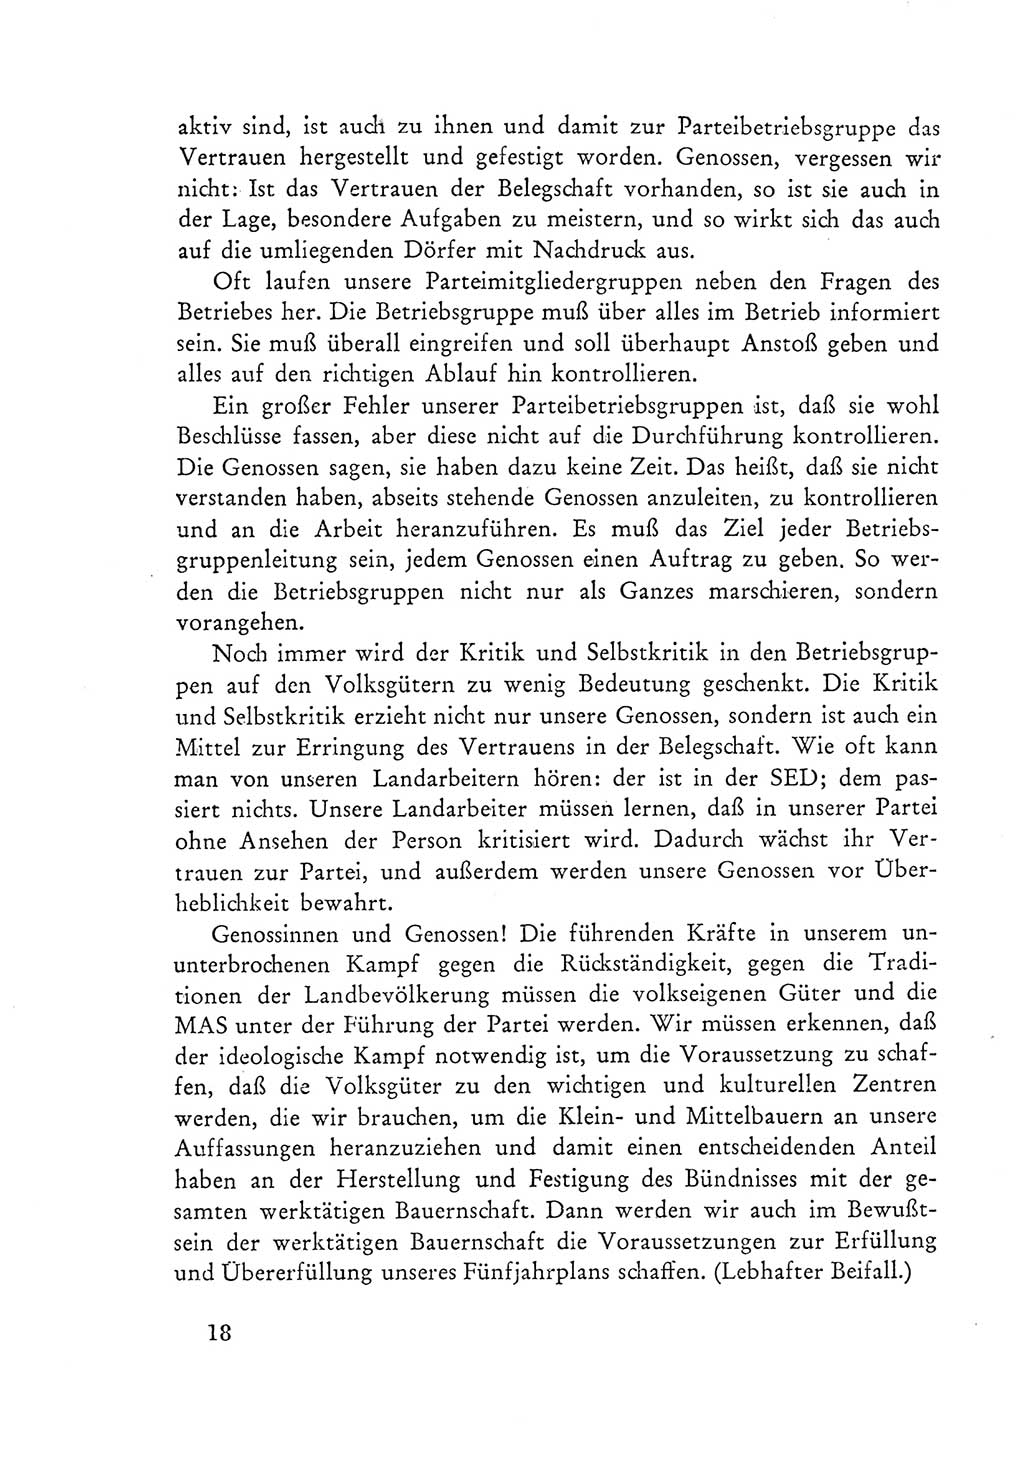 Protokoll der Verhandlungen des Ⅲ. Parteitages der Sozialistischen Einheitspartei Deutschlands (SED) [Deutsche Demokratische Republik (DDR)] 1950, Band 2, Seite 18 (Prot. Verh. Ⅲ. PT SED DDR 1950, Bd. 2, S. 18)